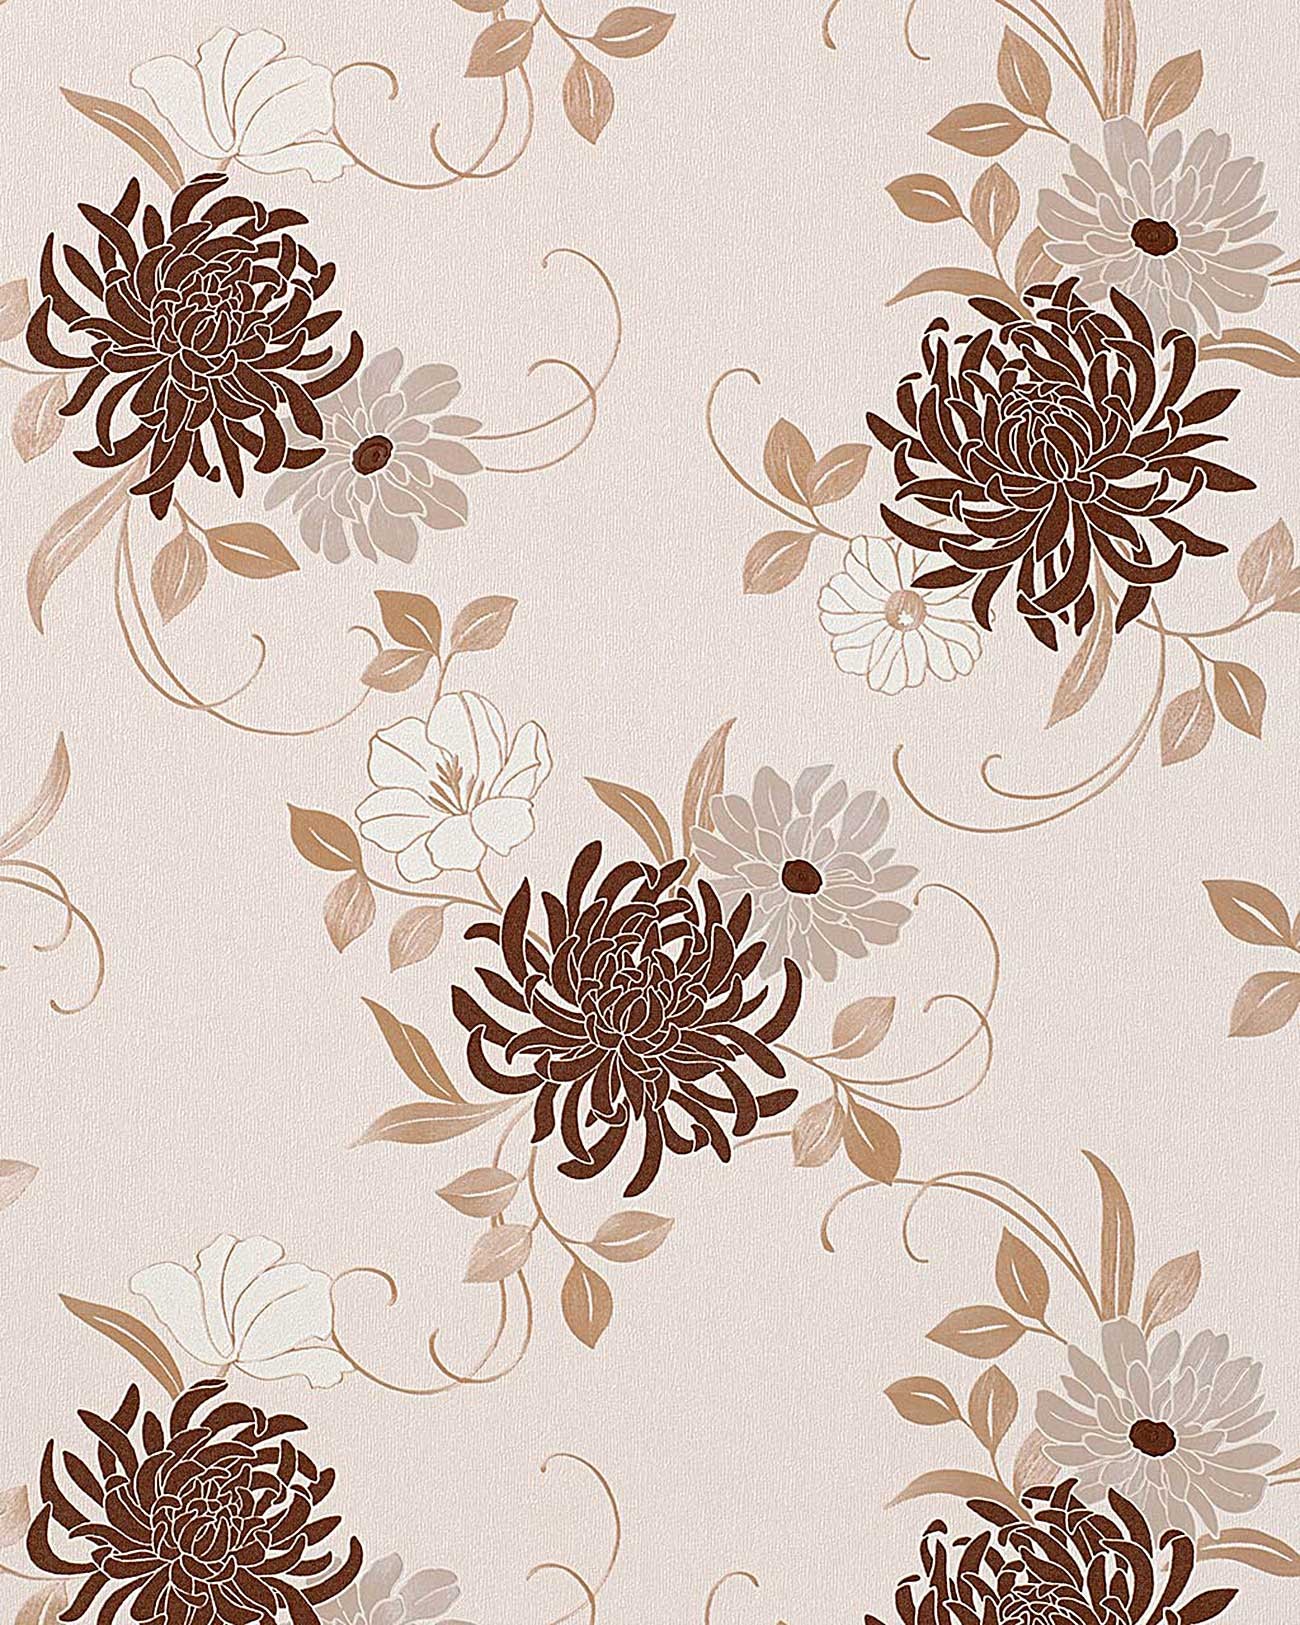 クリーム色と茶色の壁紙デザイン,パターン,褐色,花柄,ベージュ,壁紙